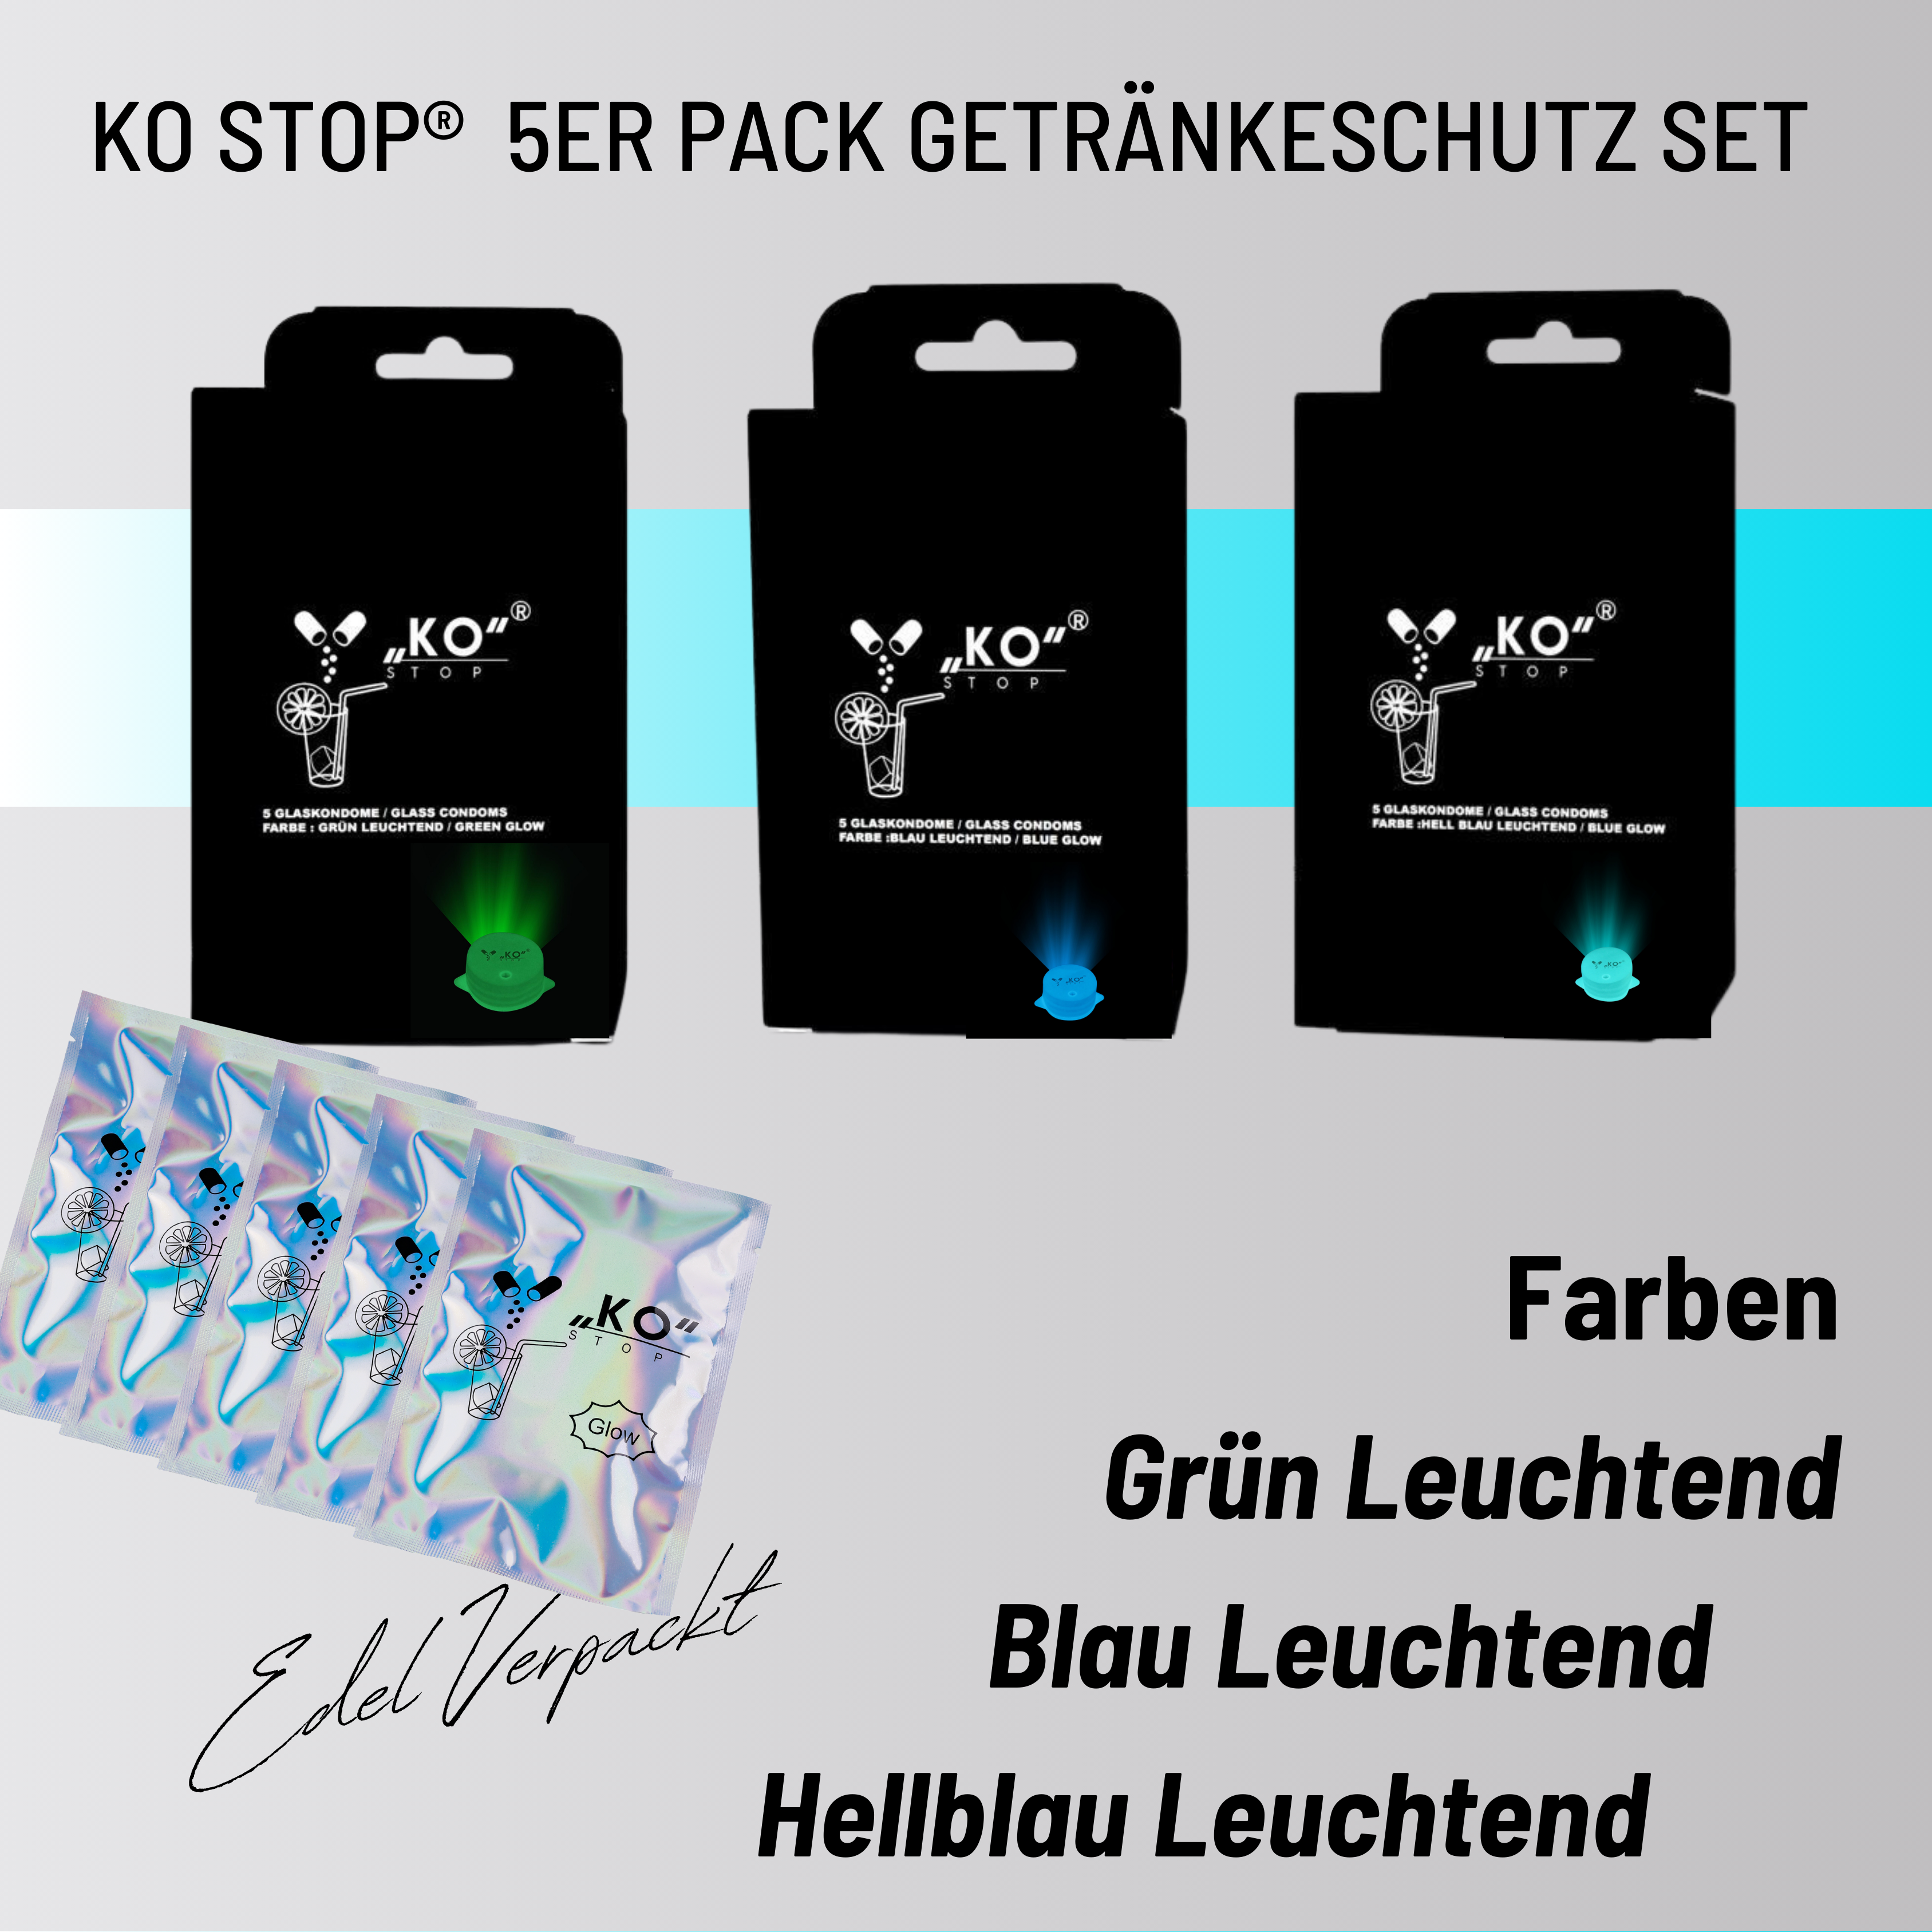 KO Stop® 5er Pack Getränkeschutz gegen K.o. Tropfen, Insekten und Verschüttungen – jetzt mit Leuchteffekt für sicheres Feiern Hellblau leuchtend